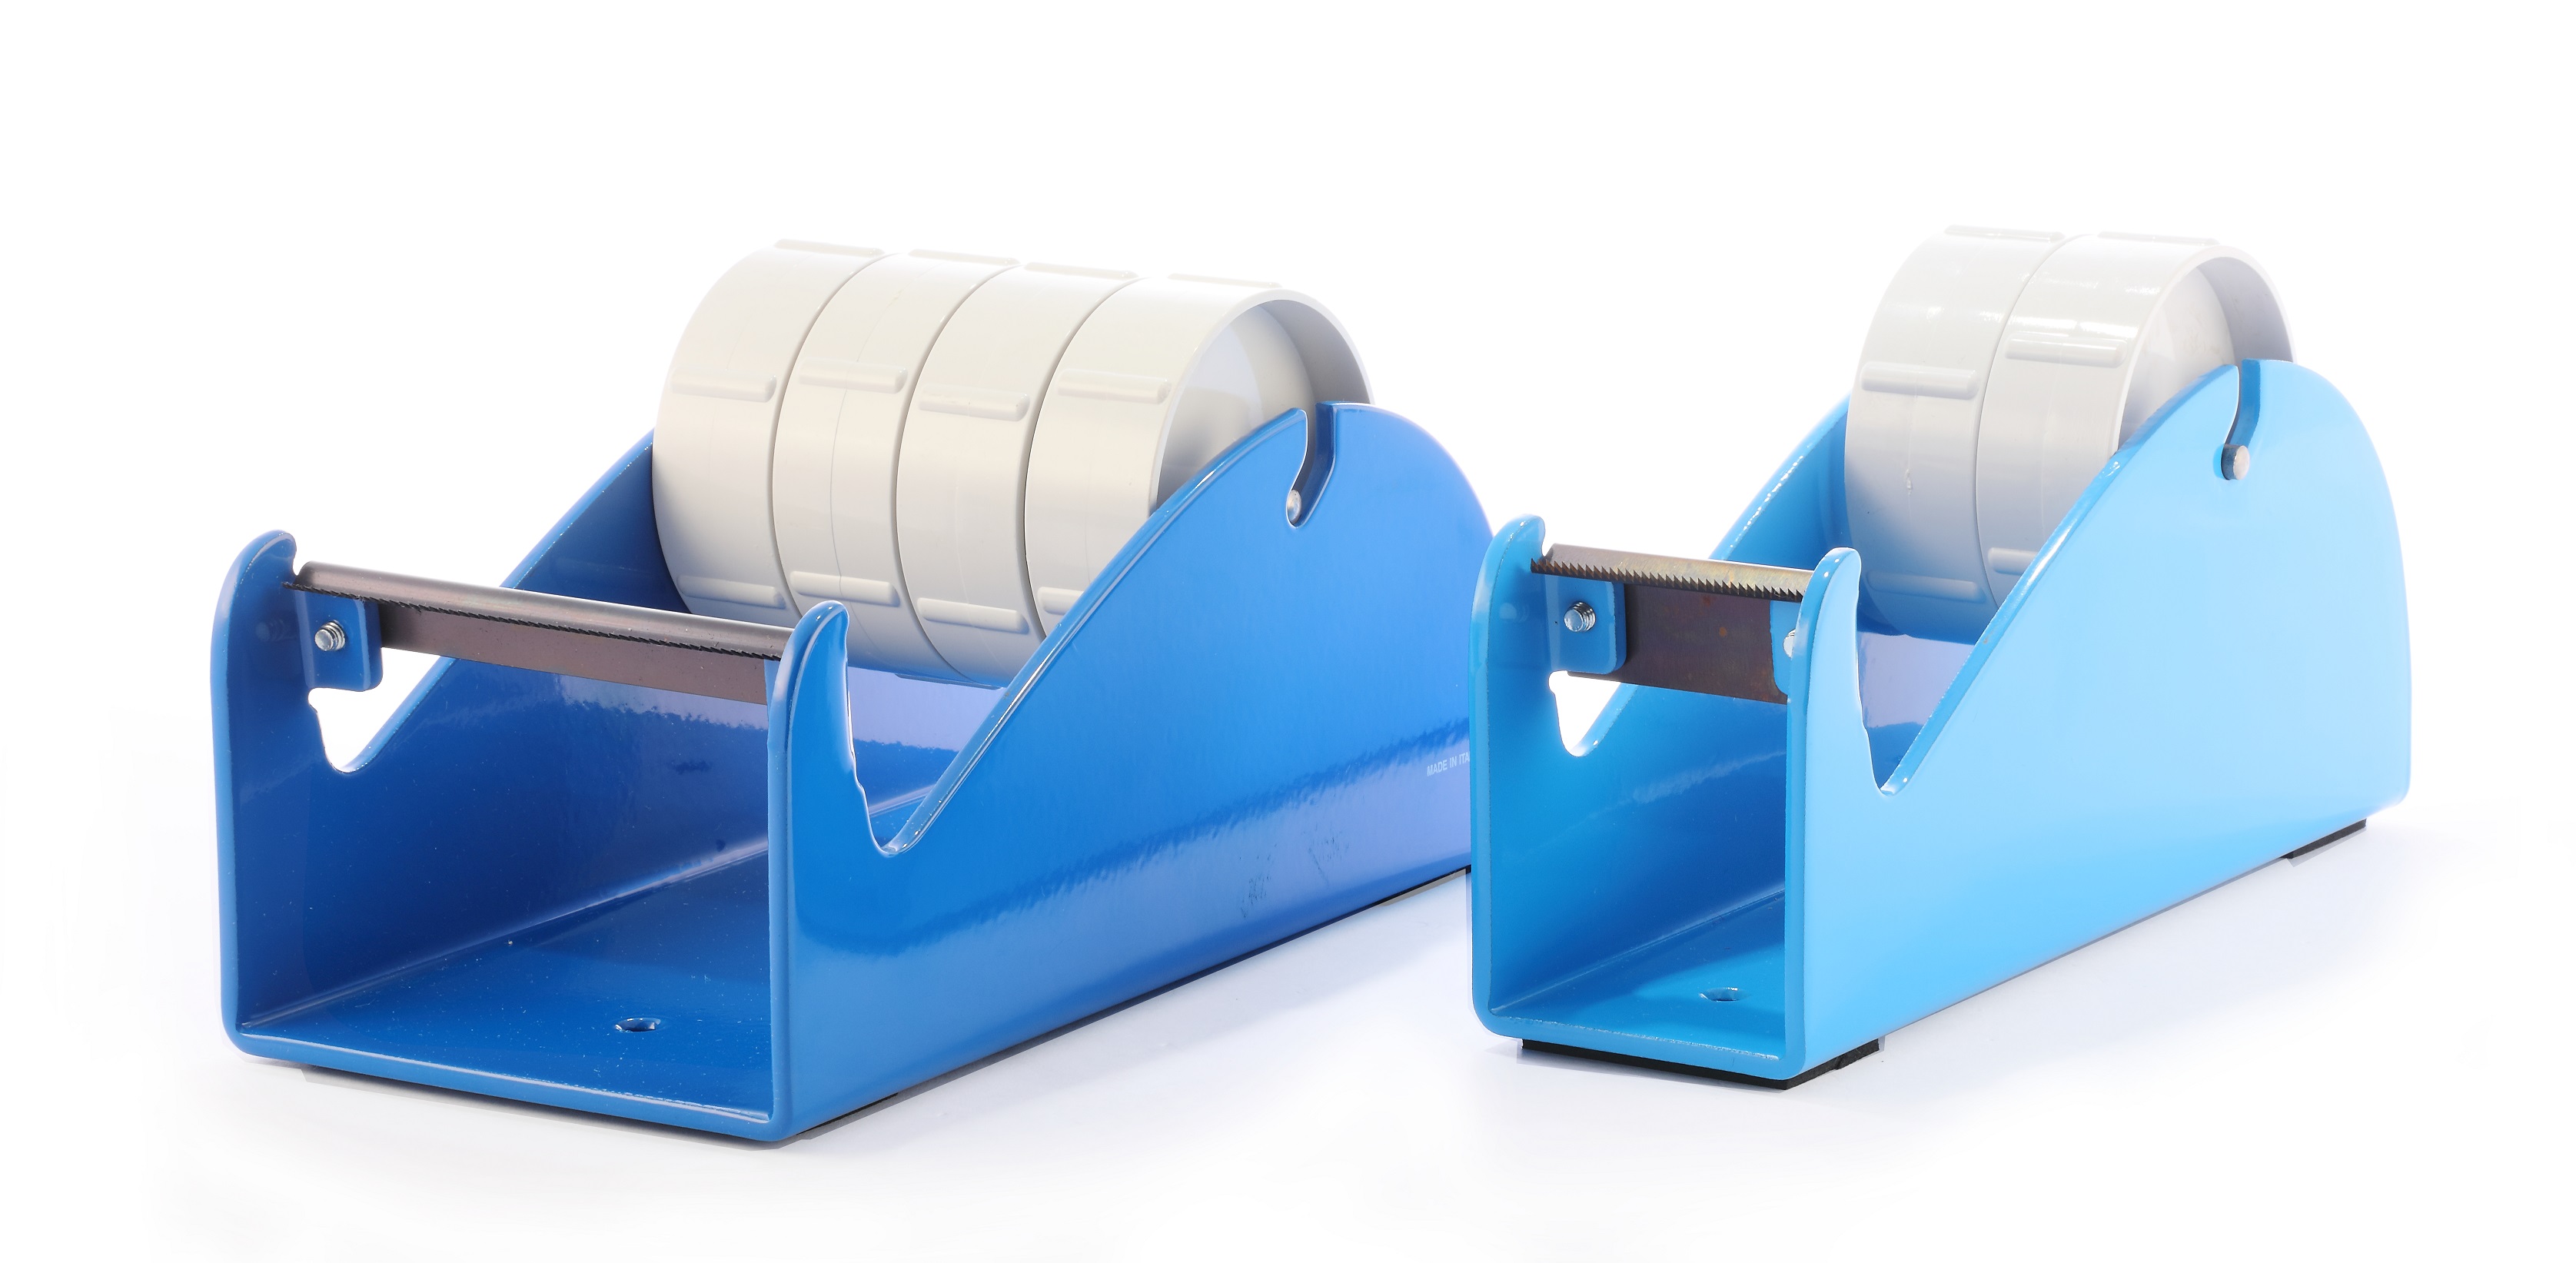 Klebeband-Tischabroller Blau, für 1-4 Rollen, 4 x 25mm Bandbreite, 145mm Außendurchmesser